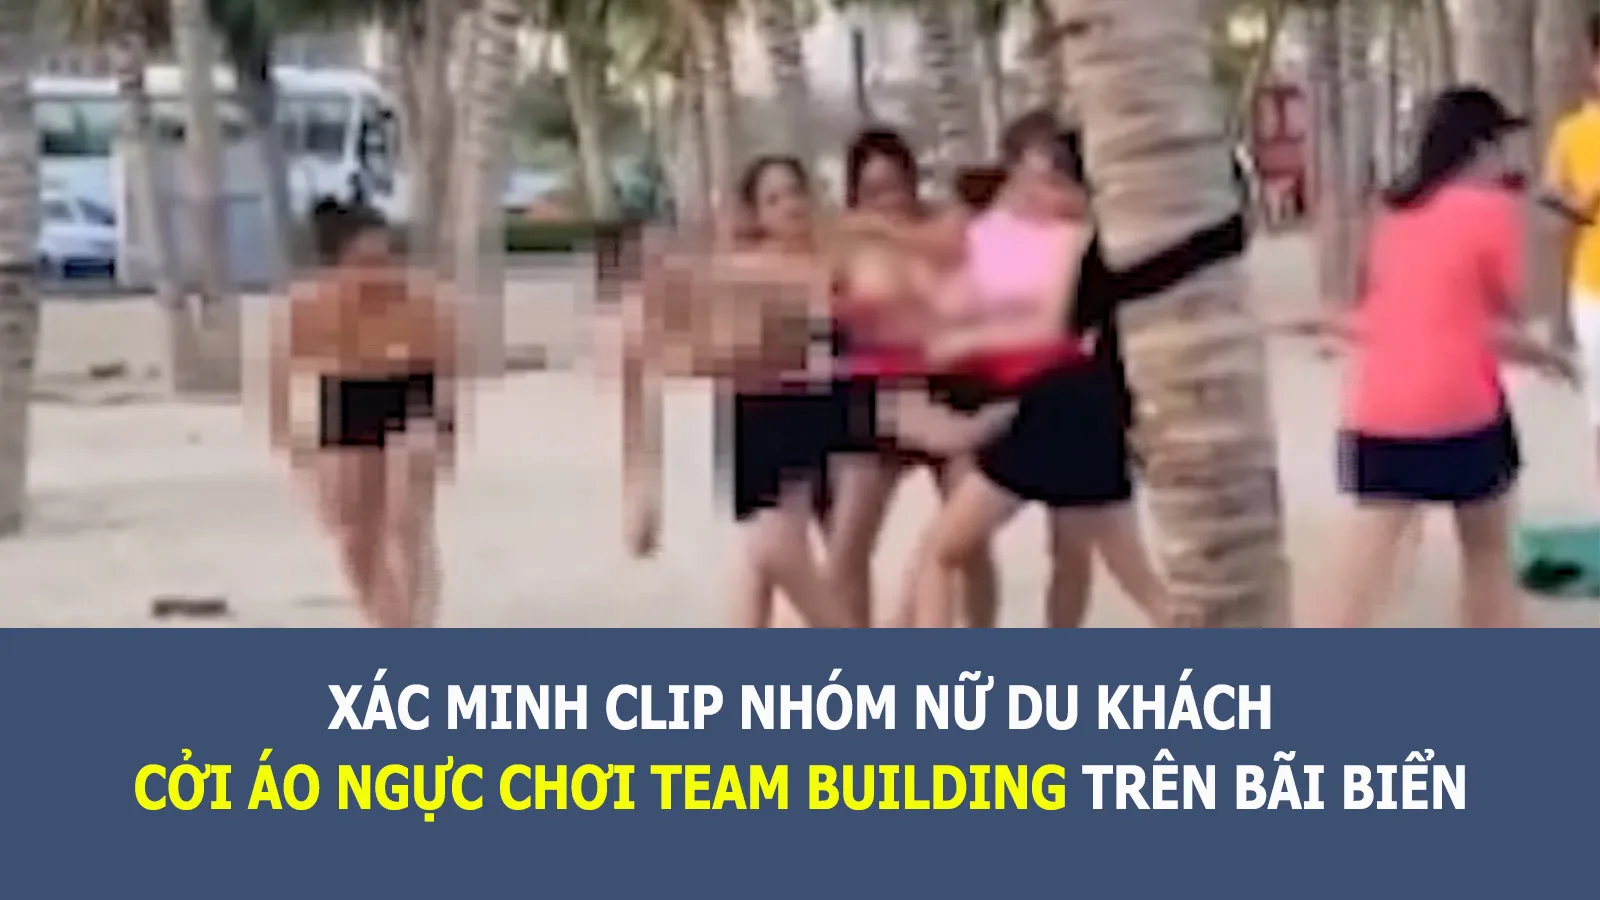 Tin nhanh chiều 13/9: Nhóm nữ du khách cởi áo ngực chơi team building trên bãi biển ở Hạ Long